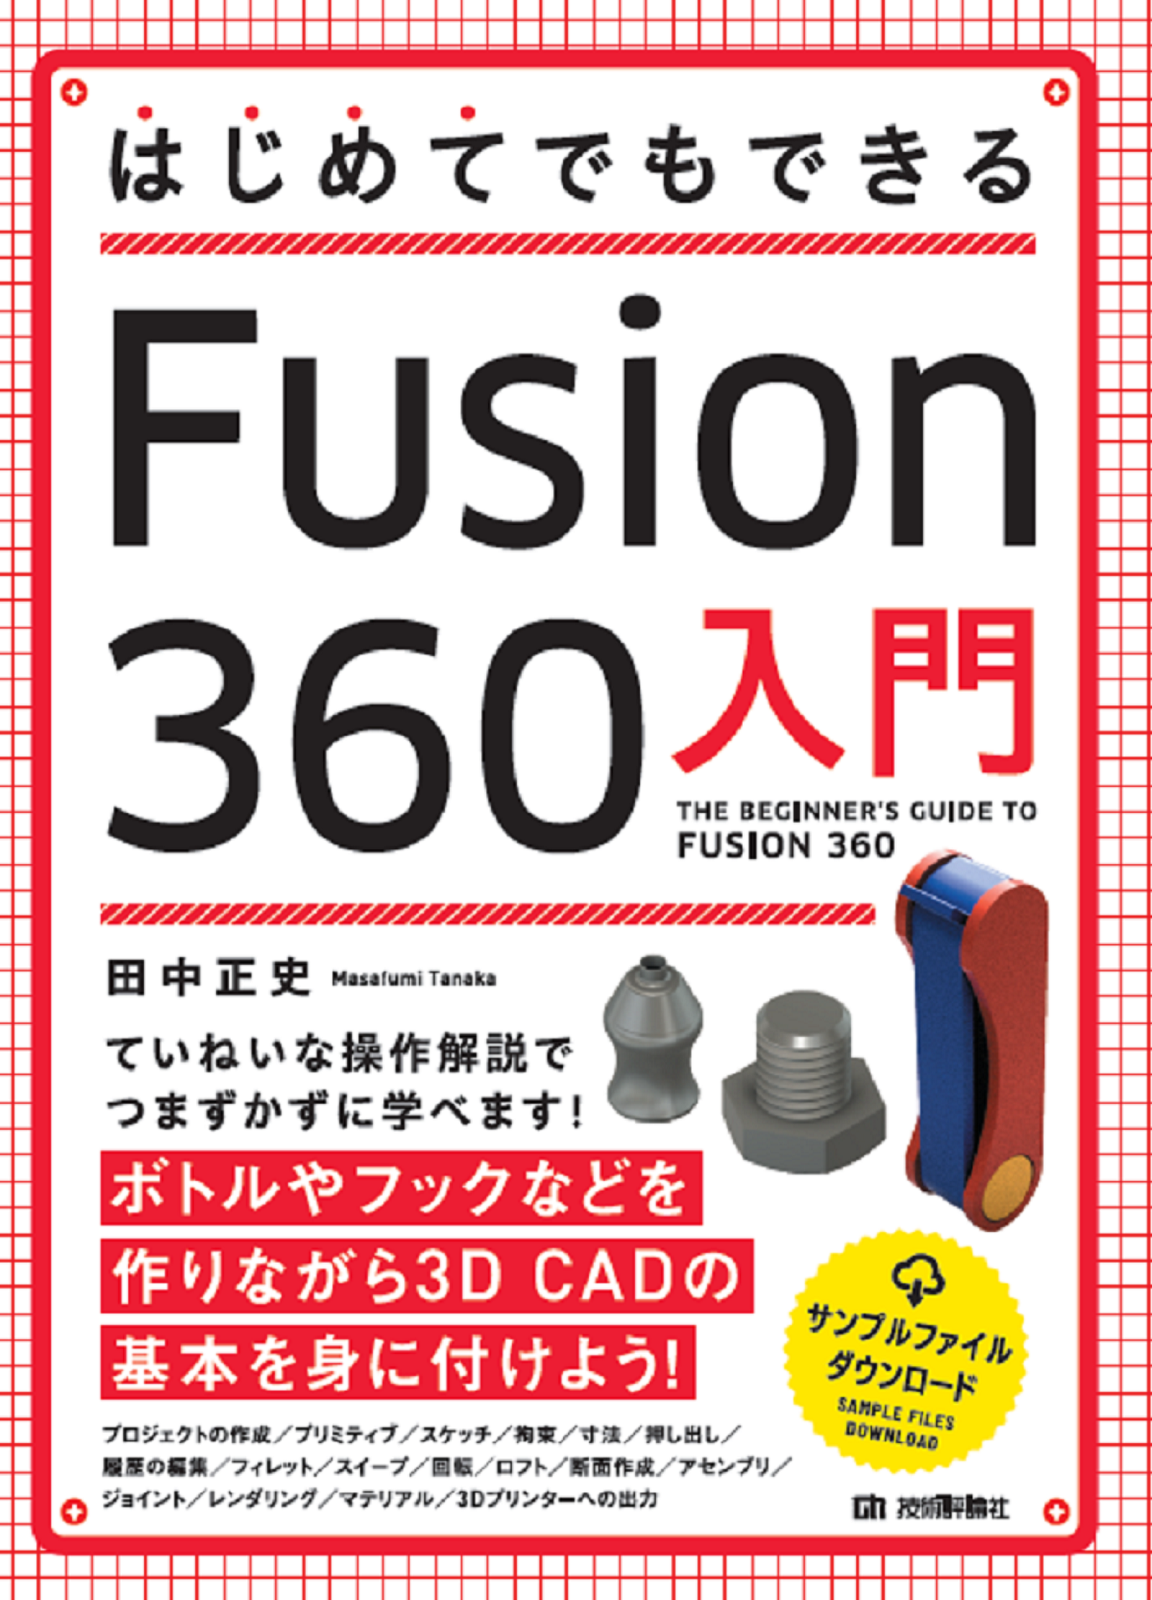 コンピュータ/ITFusion 360教本 - コンピュータ/IT